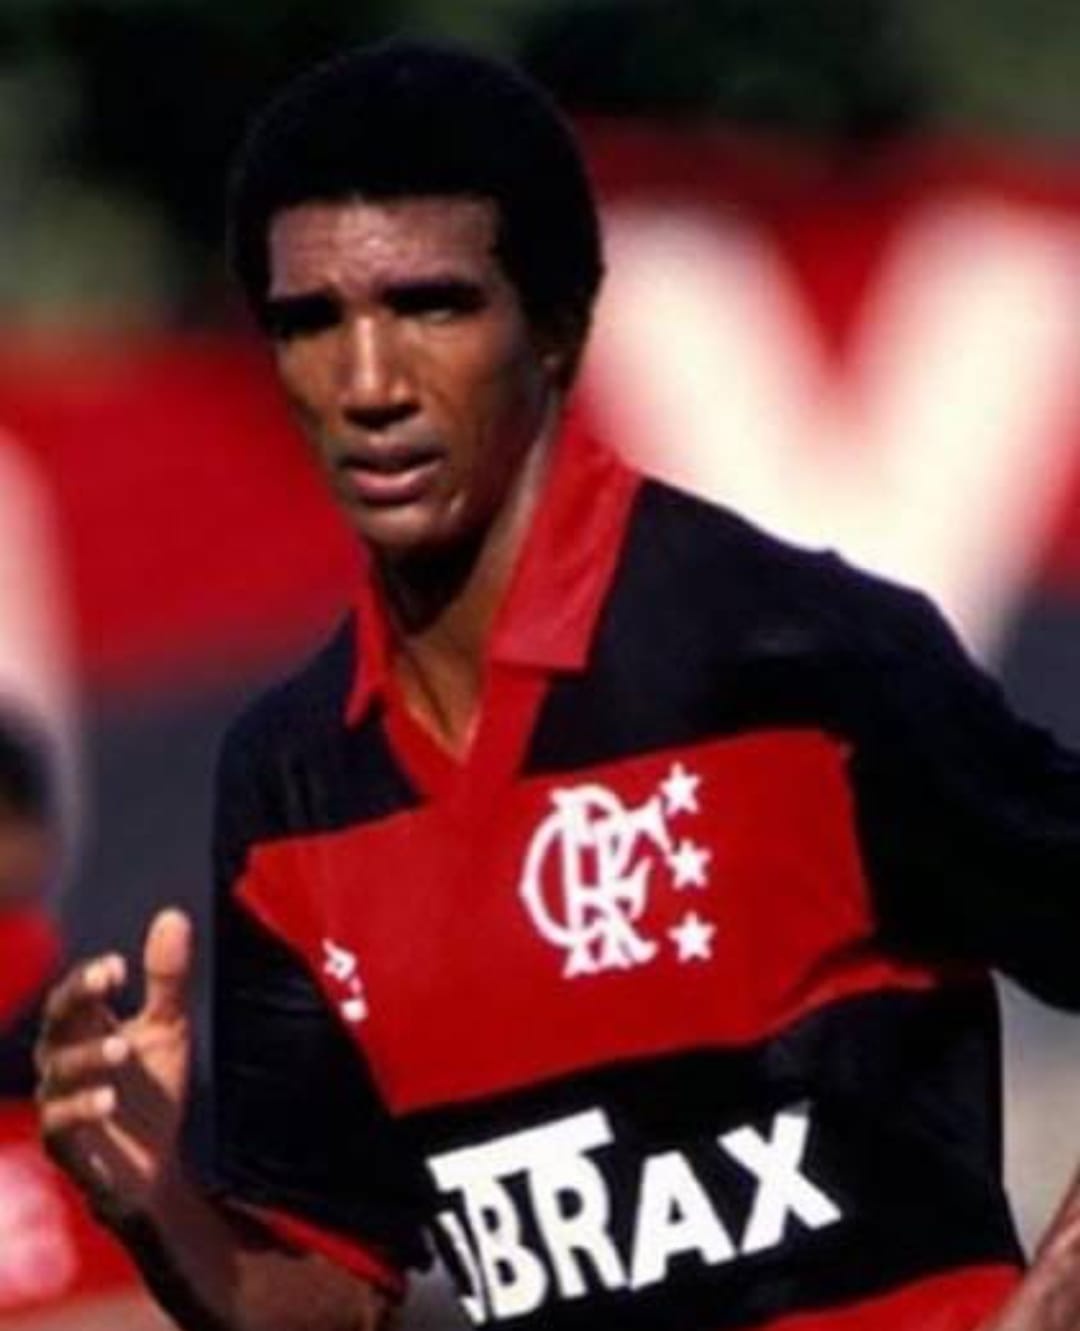 Nilson jogando com a camisa do Flamengo